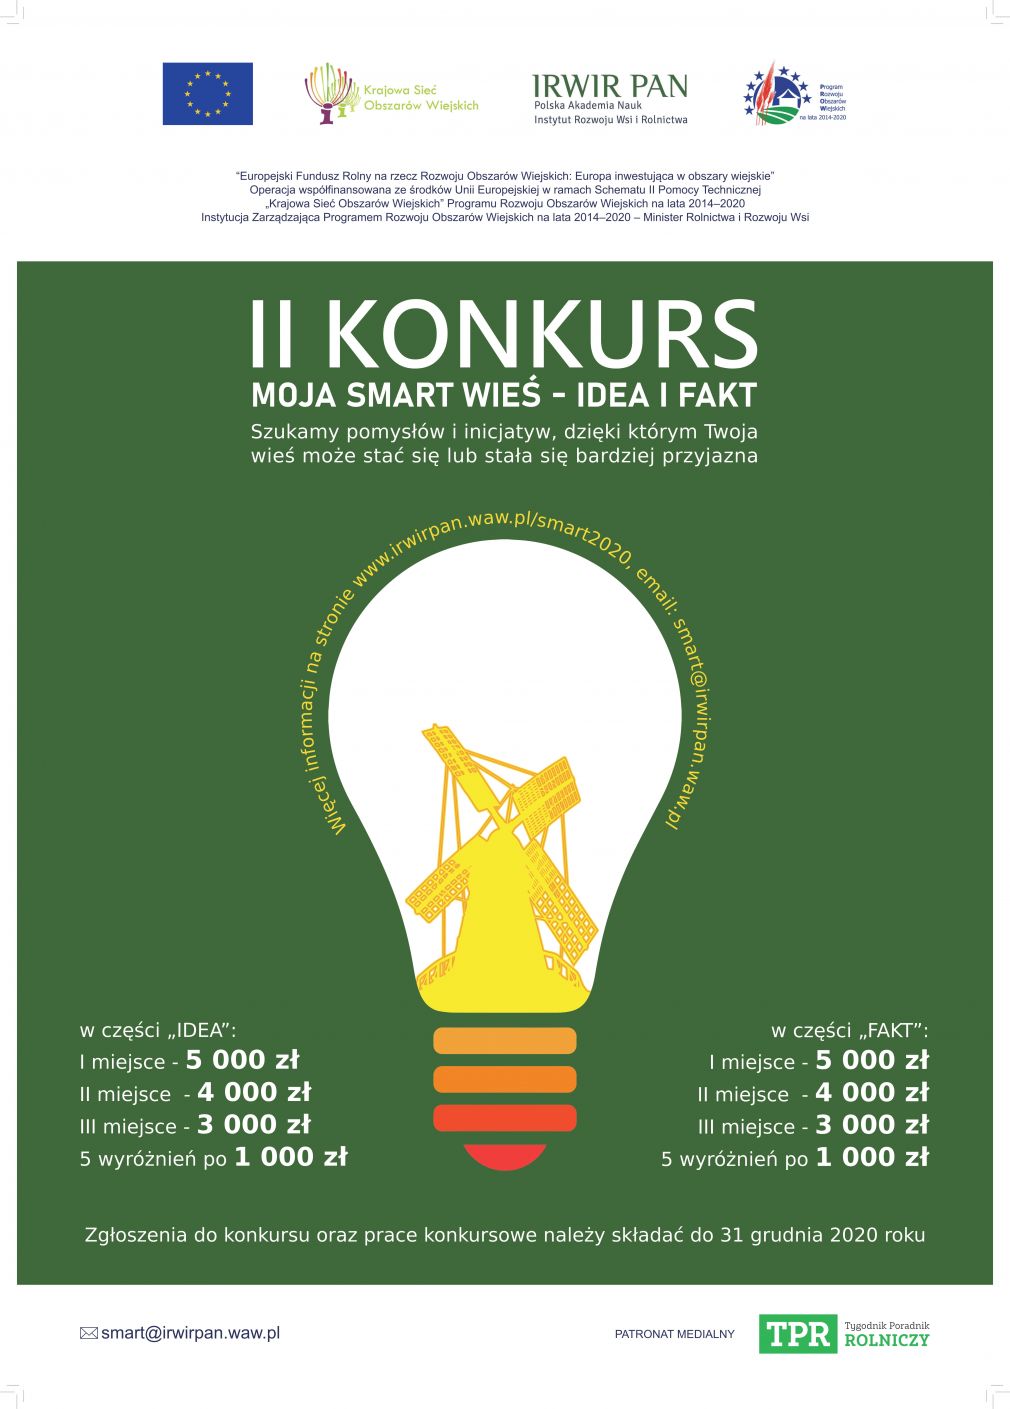 Zaproszenie do udziału w II edycji Konkursu "MOJA SMART WIEŚ - IDEA I FAKT"